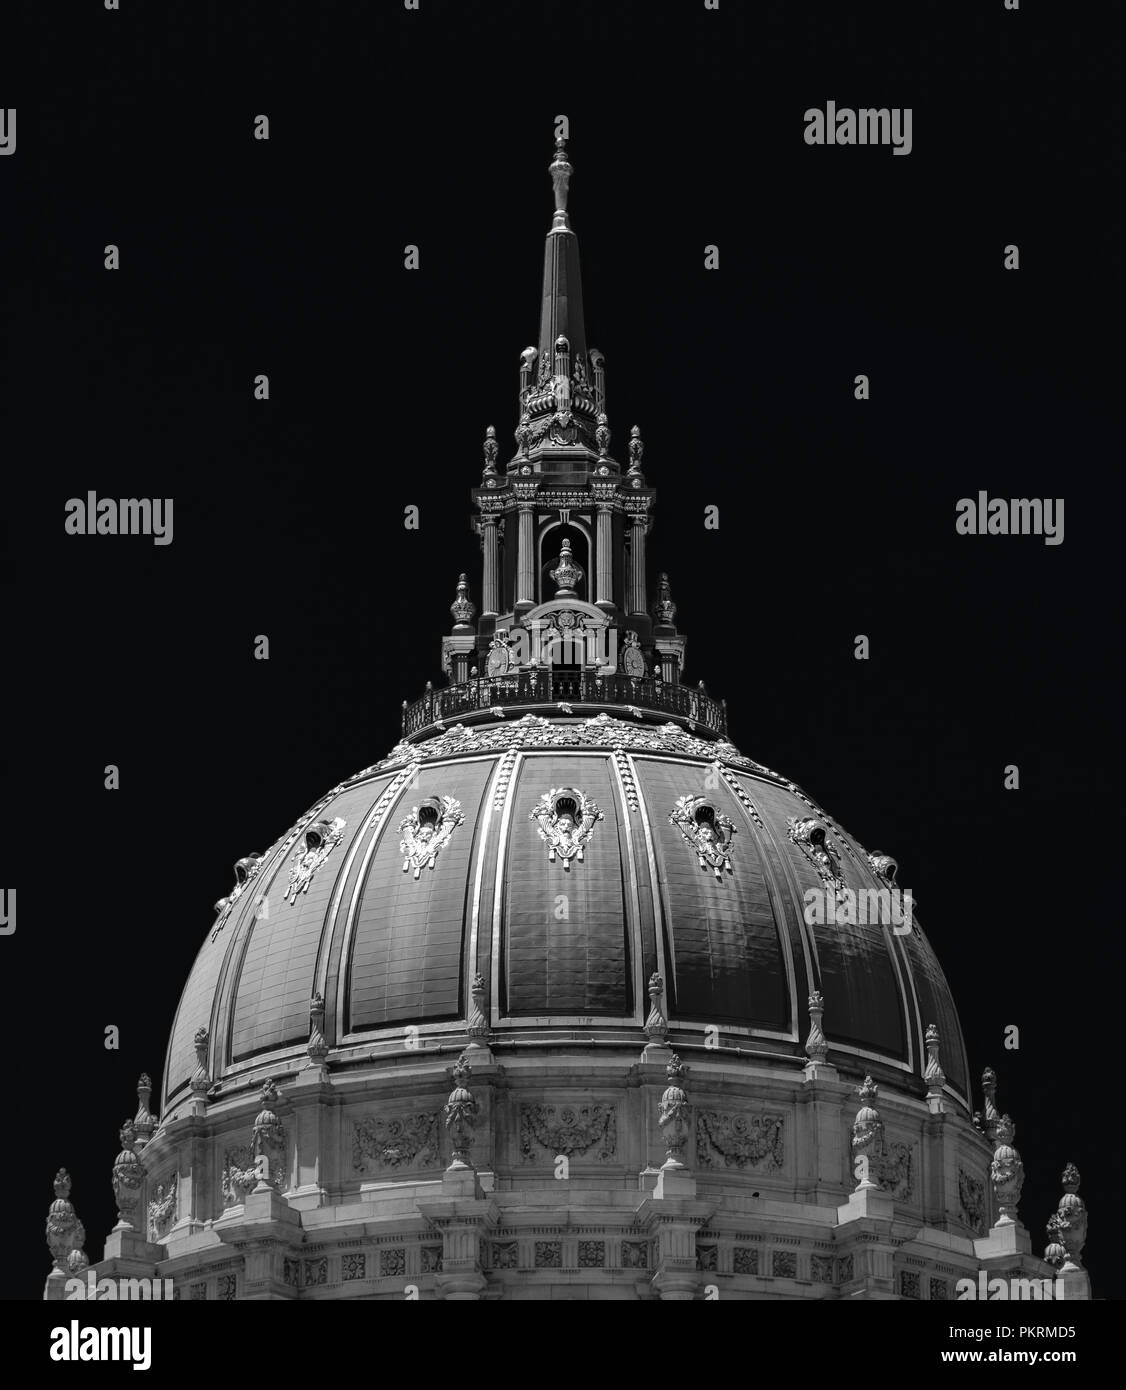 La impresionante cúpula de la Alcaldía de San Francisco en blanco y negro Foto de stock